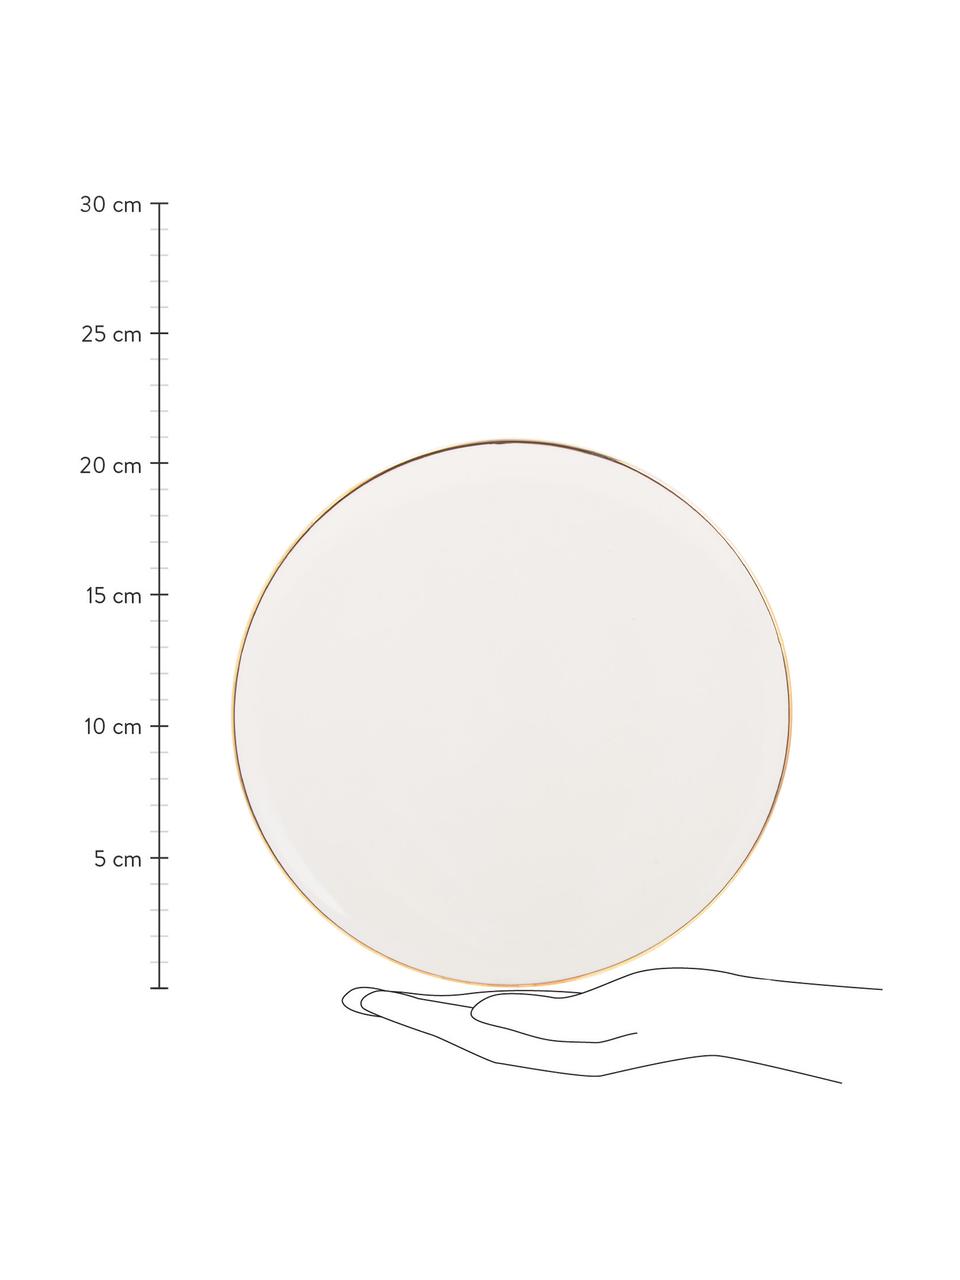 Ručně vyrobený snídaňový talíř se zlatým okrajem Allure, 6 ks, Keramika, Bílá, zlatá, Ø 21 cm